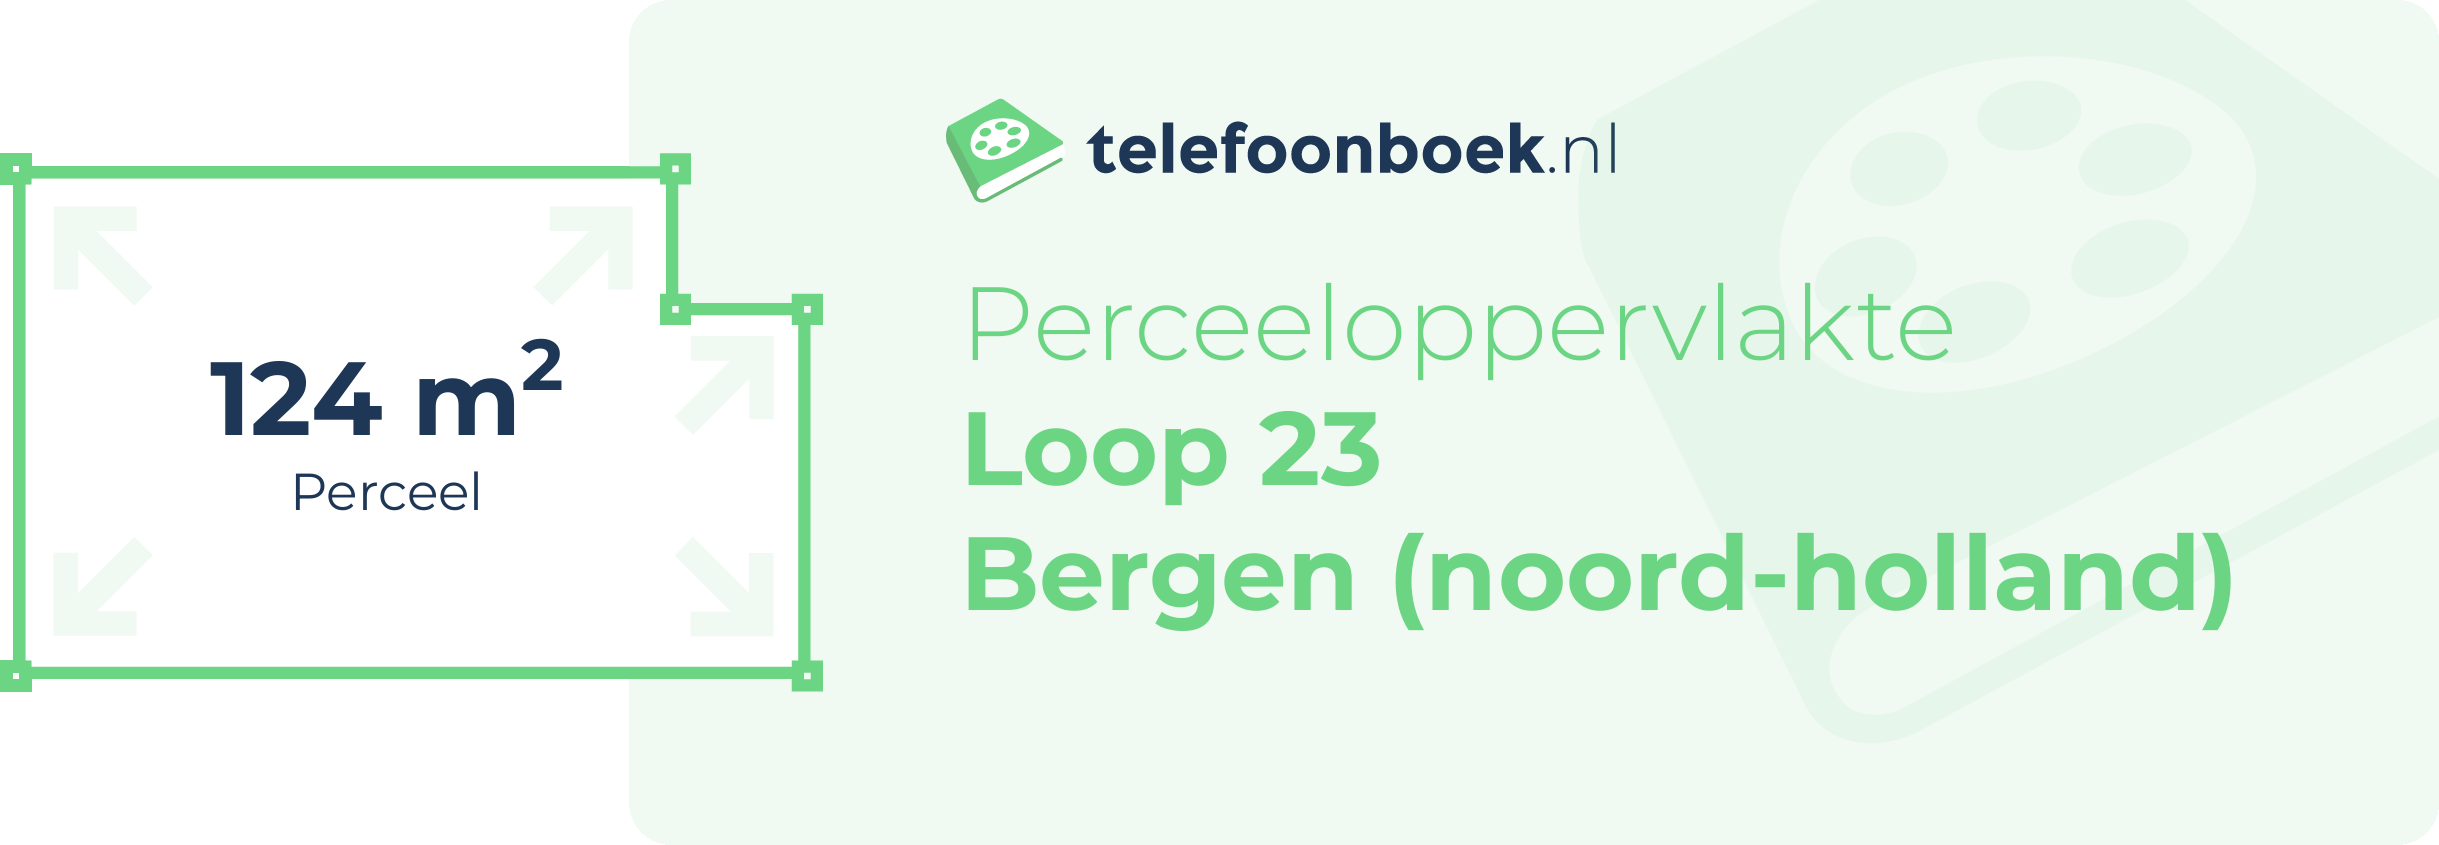 Perceeloppervlakte Loop 23 Bergen (Noord-Holland)